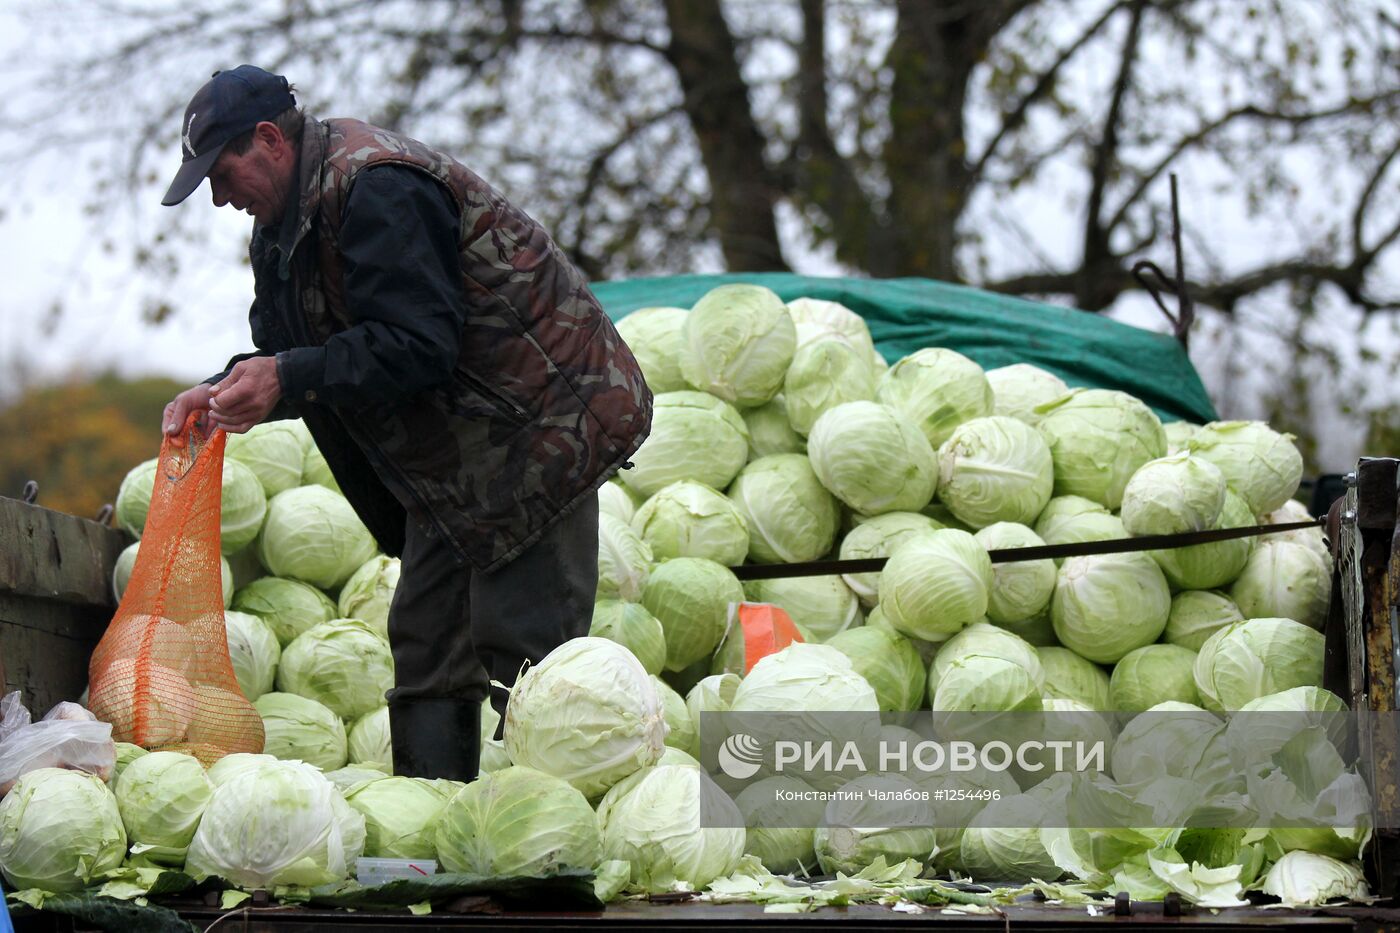 Сельскохозяйственная ярмарка "Урожай" в Великом Новгороде